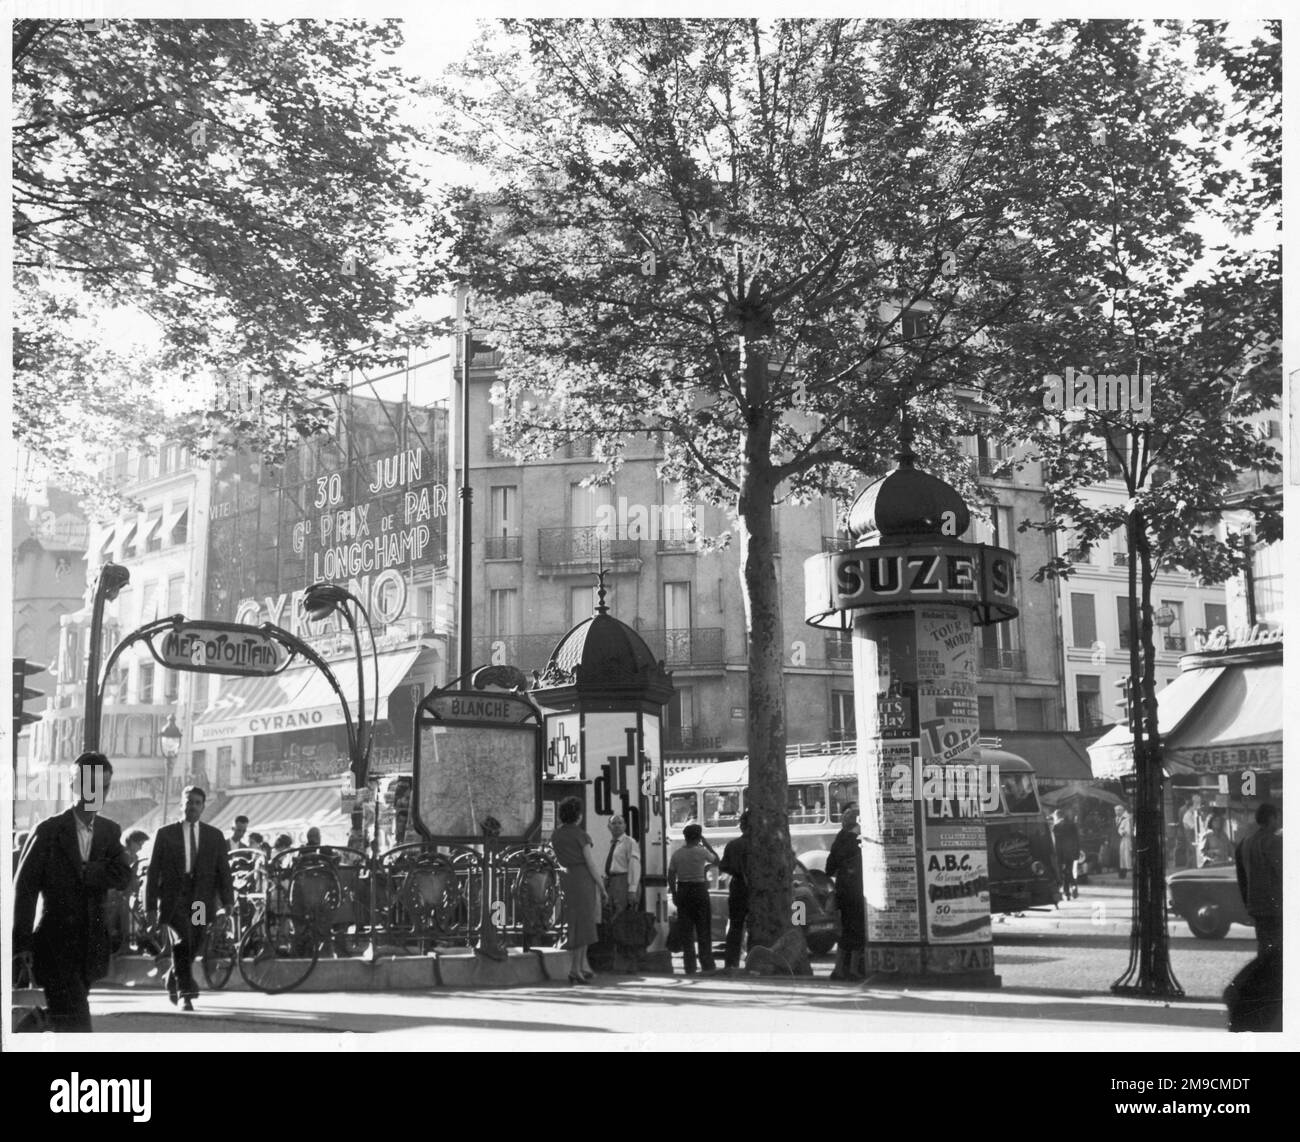 Eine angenehme Szene außerhalb der Metrostation Blanche, in der Nähe des Moulin Rouge, Paris, Frankreich. Stockfoto